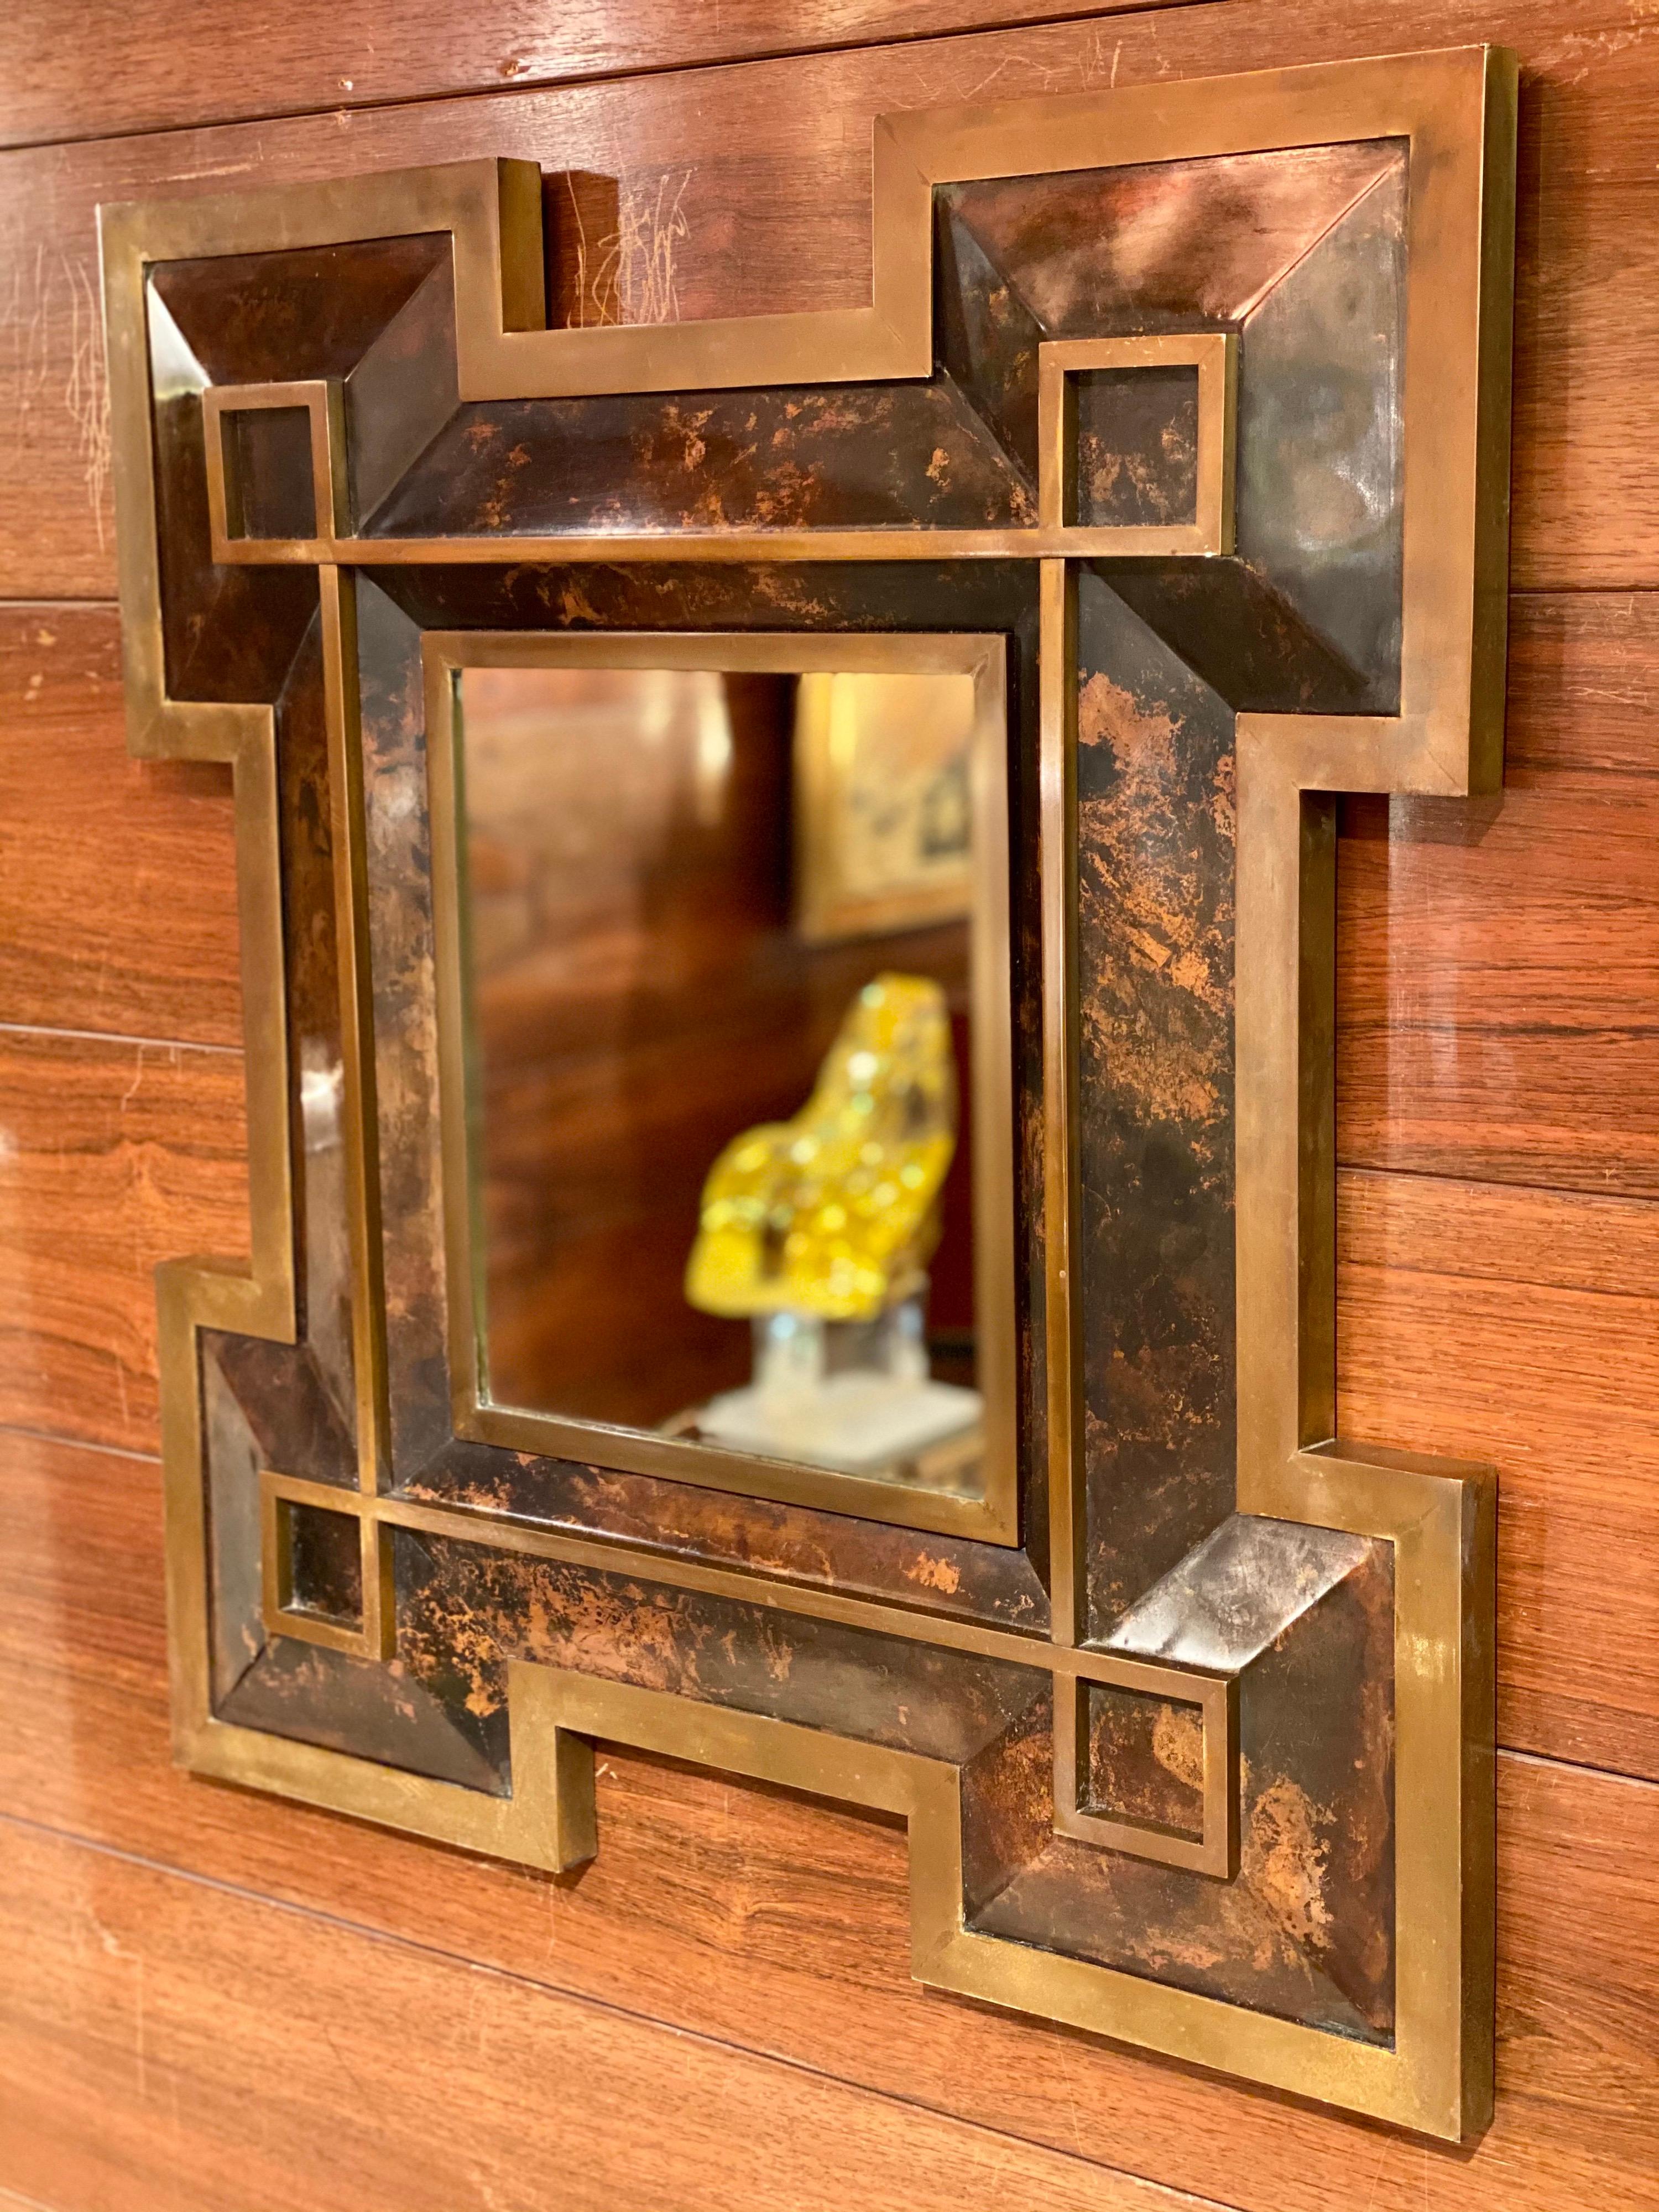 Neoklassischer Spiegel aus Metall und Messing von Maison Jansen, 1970er Jahre. Hochwertige Verarbeitung mit dicken Messingdetails und schöner Patina.